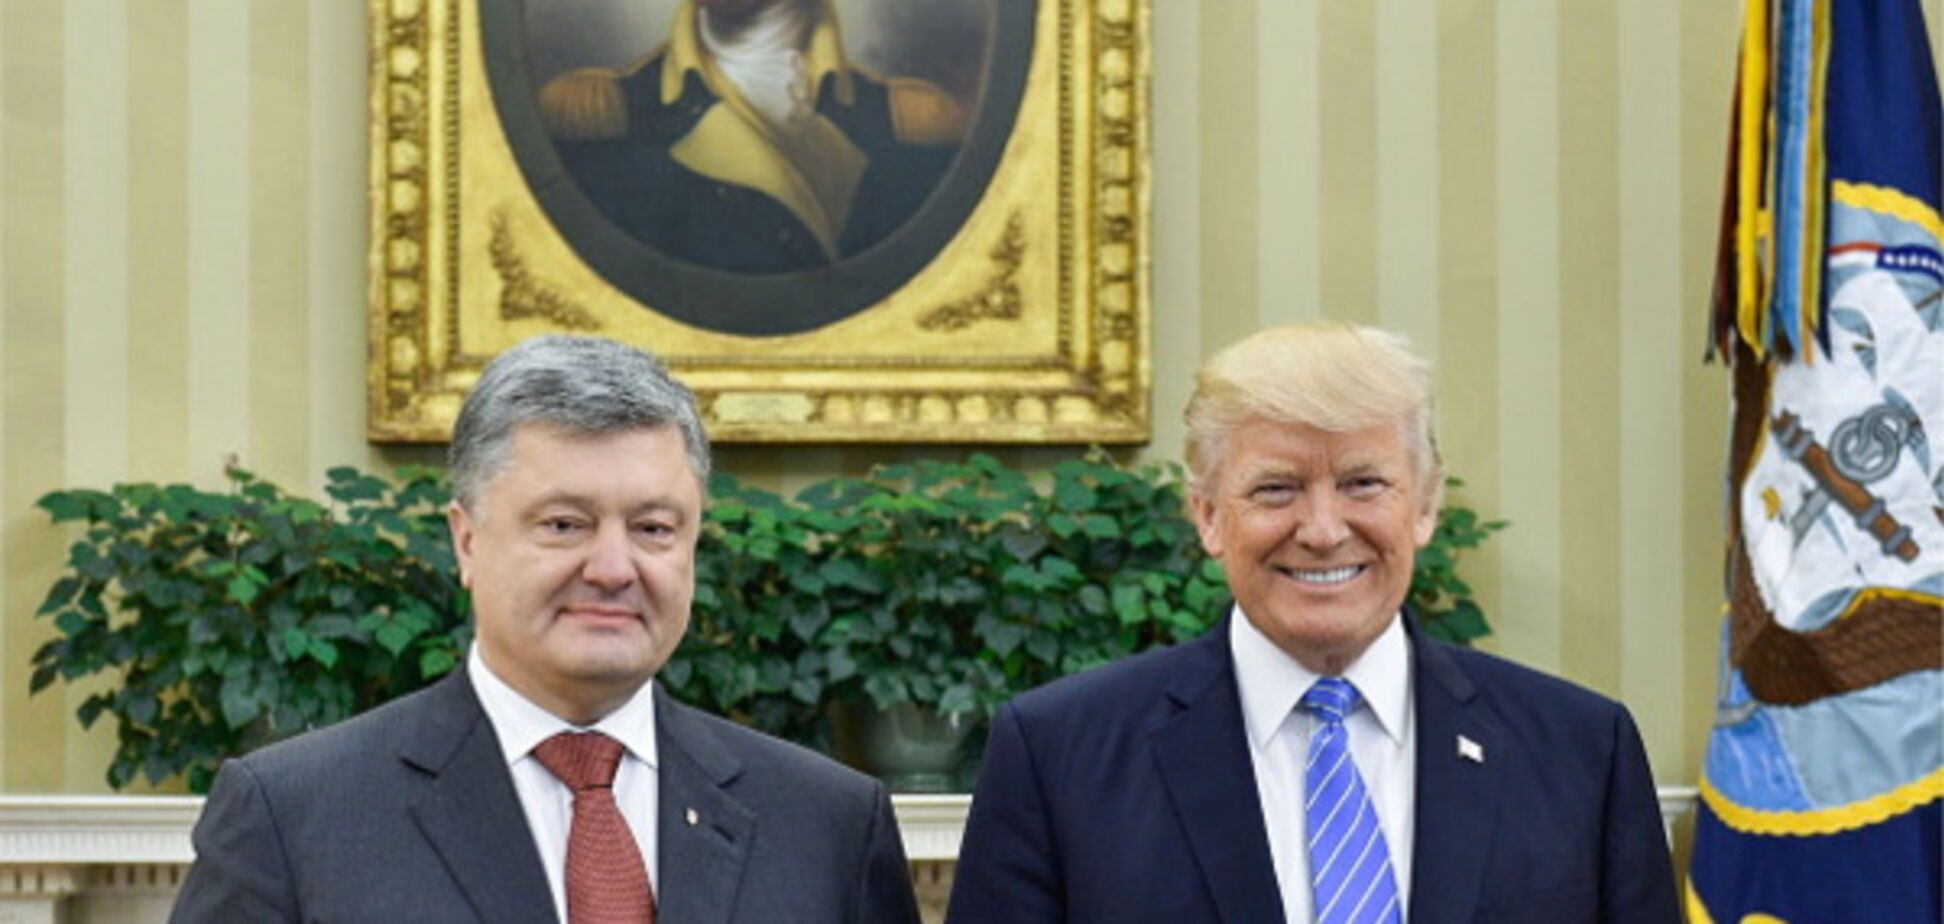 Петро Порошенко і Дональд Трамп